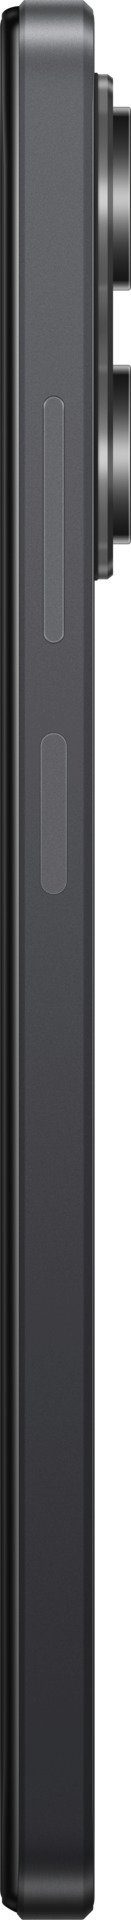 Smartphone GB Xiaomi Schwarz Zoll, Pro (16,9 108 128 cm/6,67 Speicherplatz, Kamera) X5 MP 5G POCO 6GB+128GB